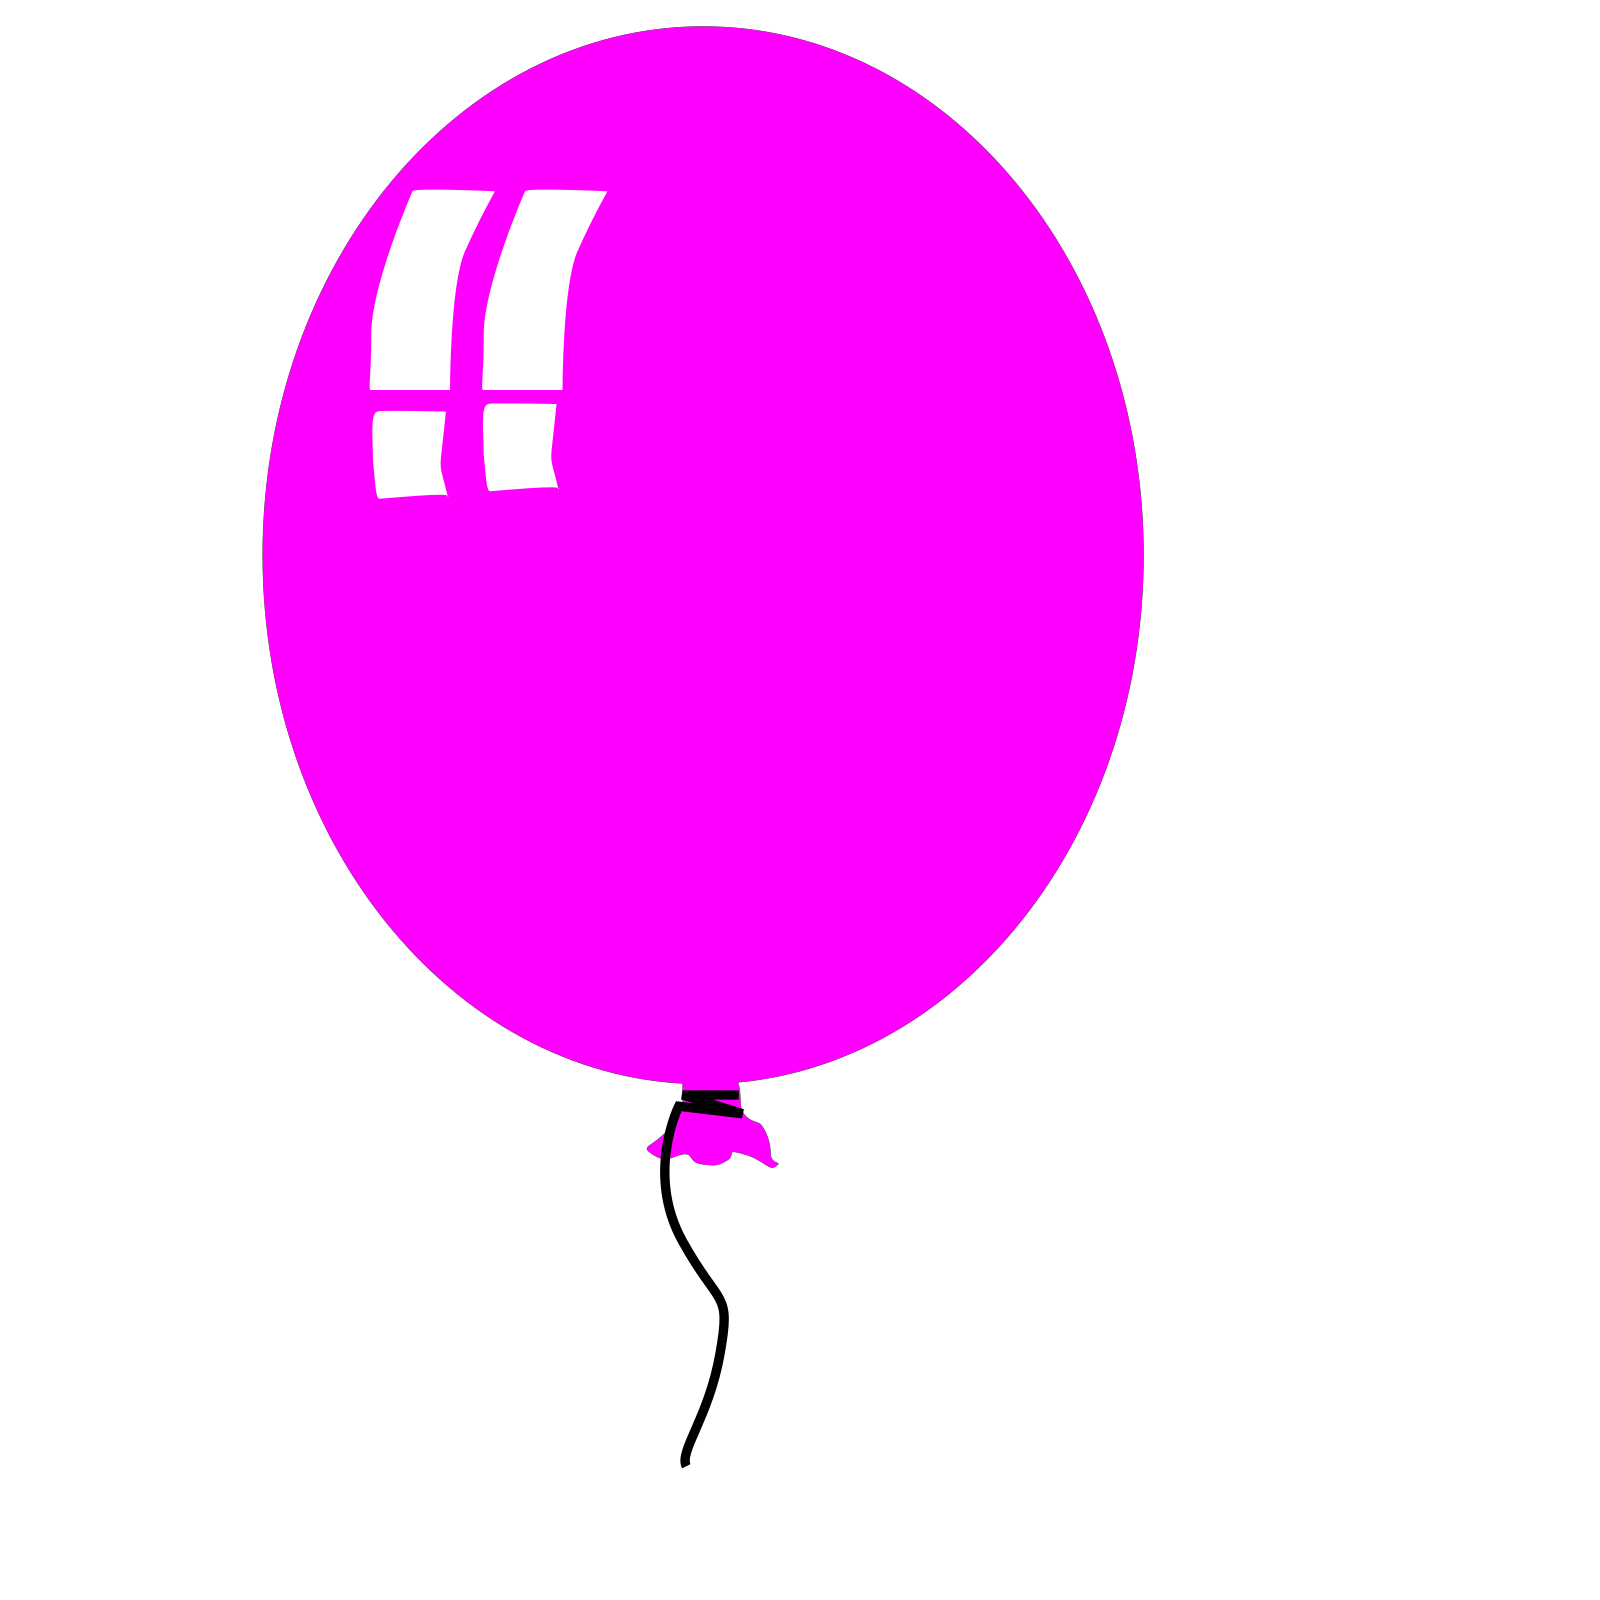 Воздушный шарик распечатать. Воздушный шарик. Воздушный шарик рисунок. Воздушные шарики для вырезания. Дети с воздушными шариками.